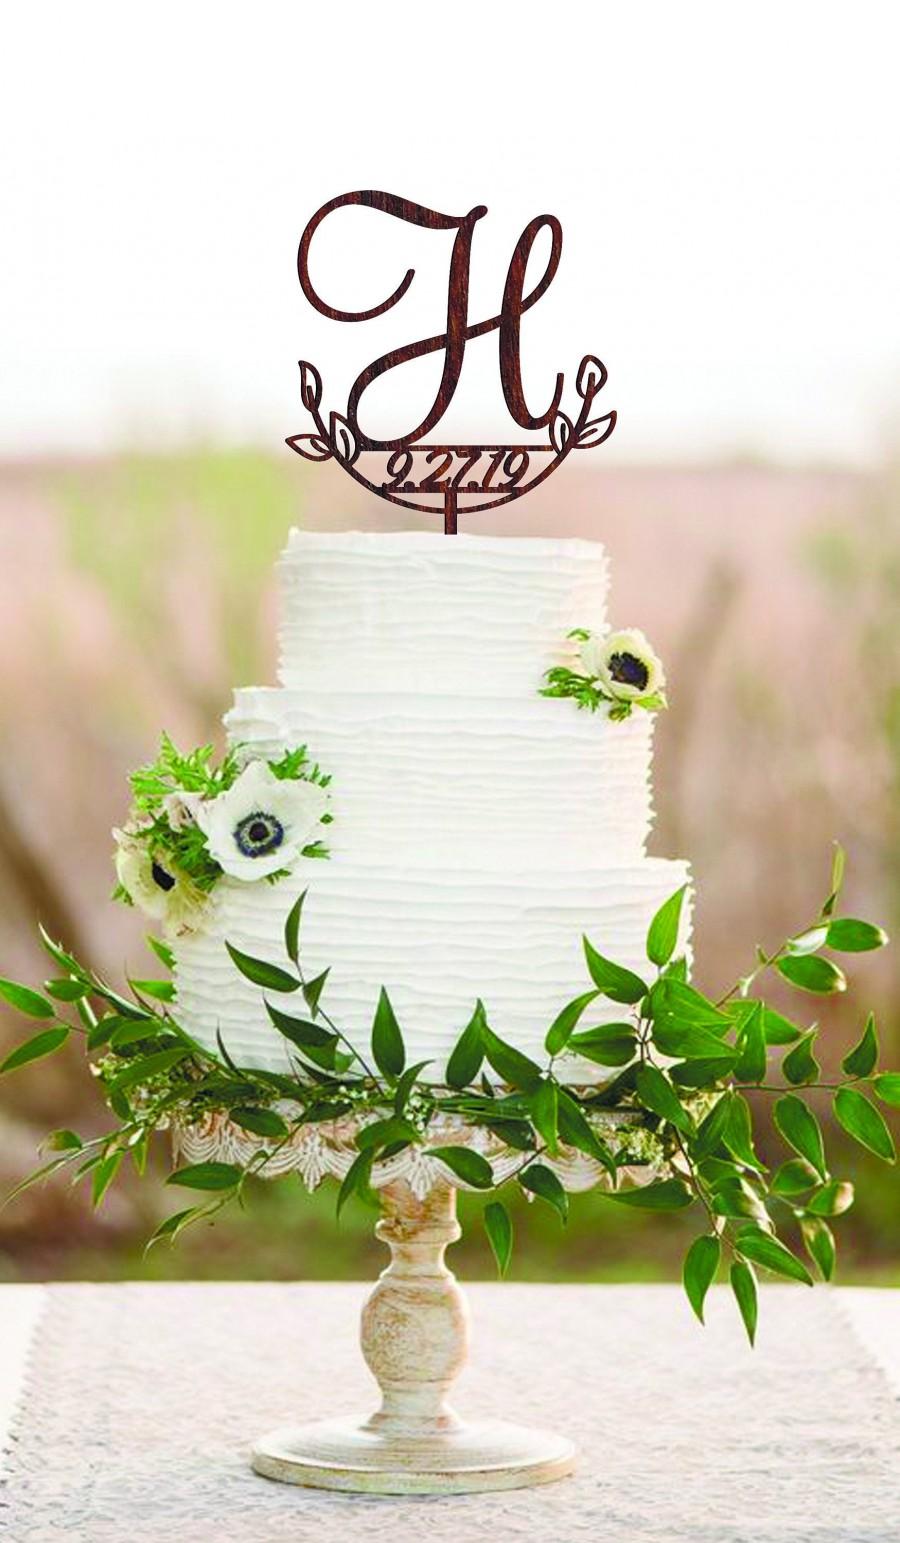 زفاف - H cake topper date Wedding cake topper H Cake toppers for wedding Initial cake topper Wood monogram cake topper Rustic cake topper wedding H